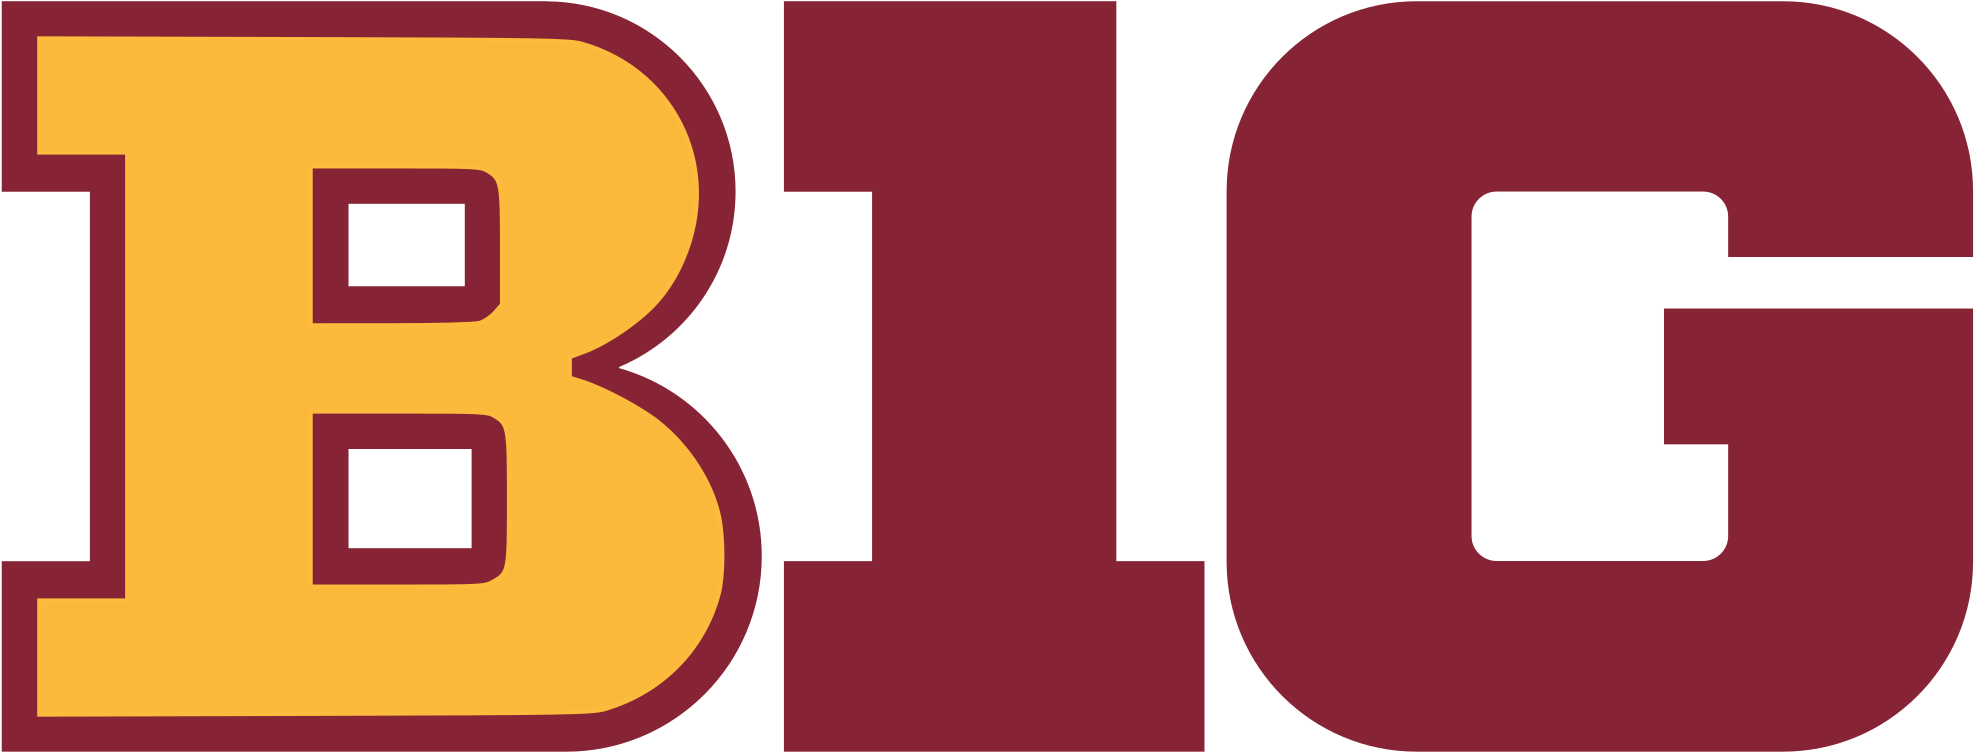 Open - Wisconsin Big Ten Logo (2000x778)